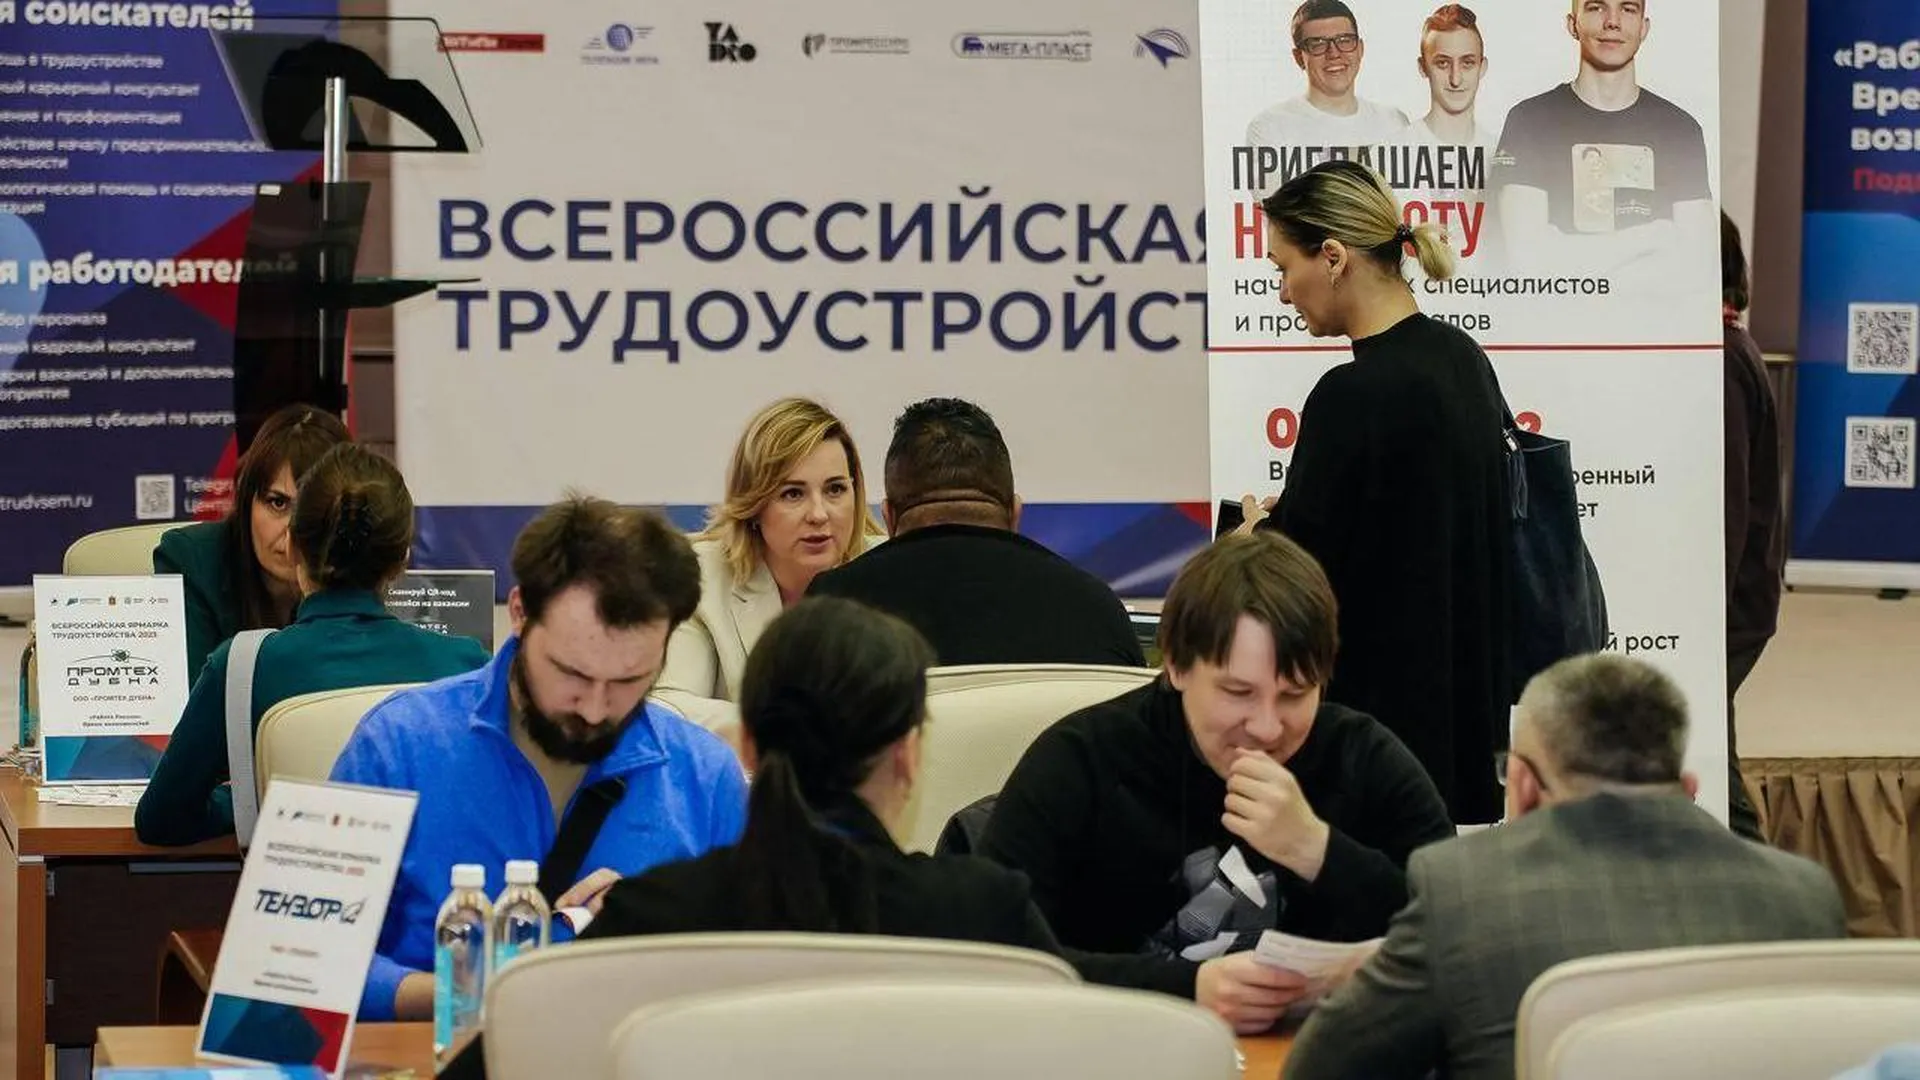 Региональный этап Всероссийской ярмарки трудоустройства пройдет в Подмосковье